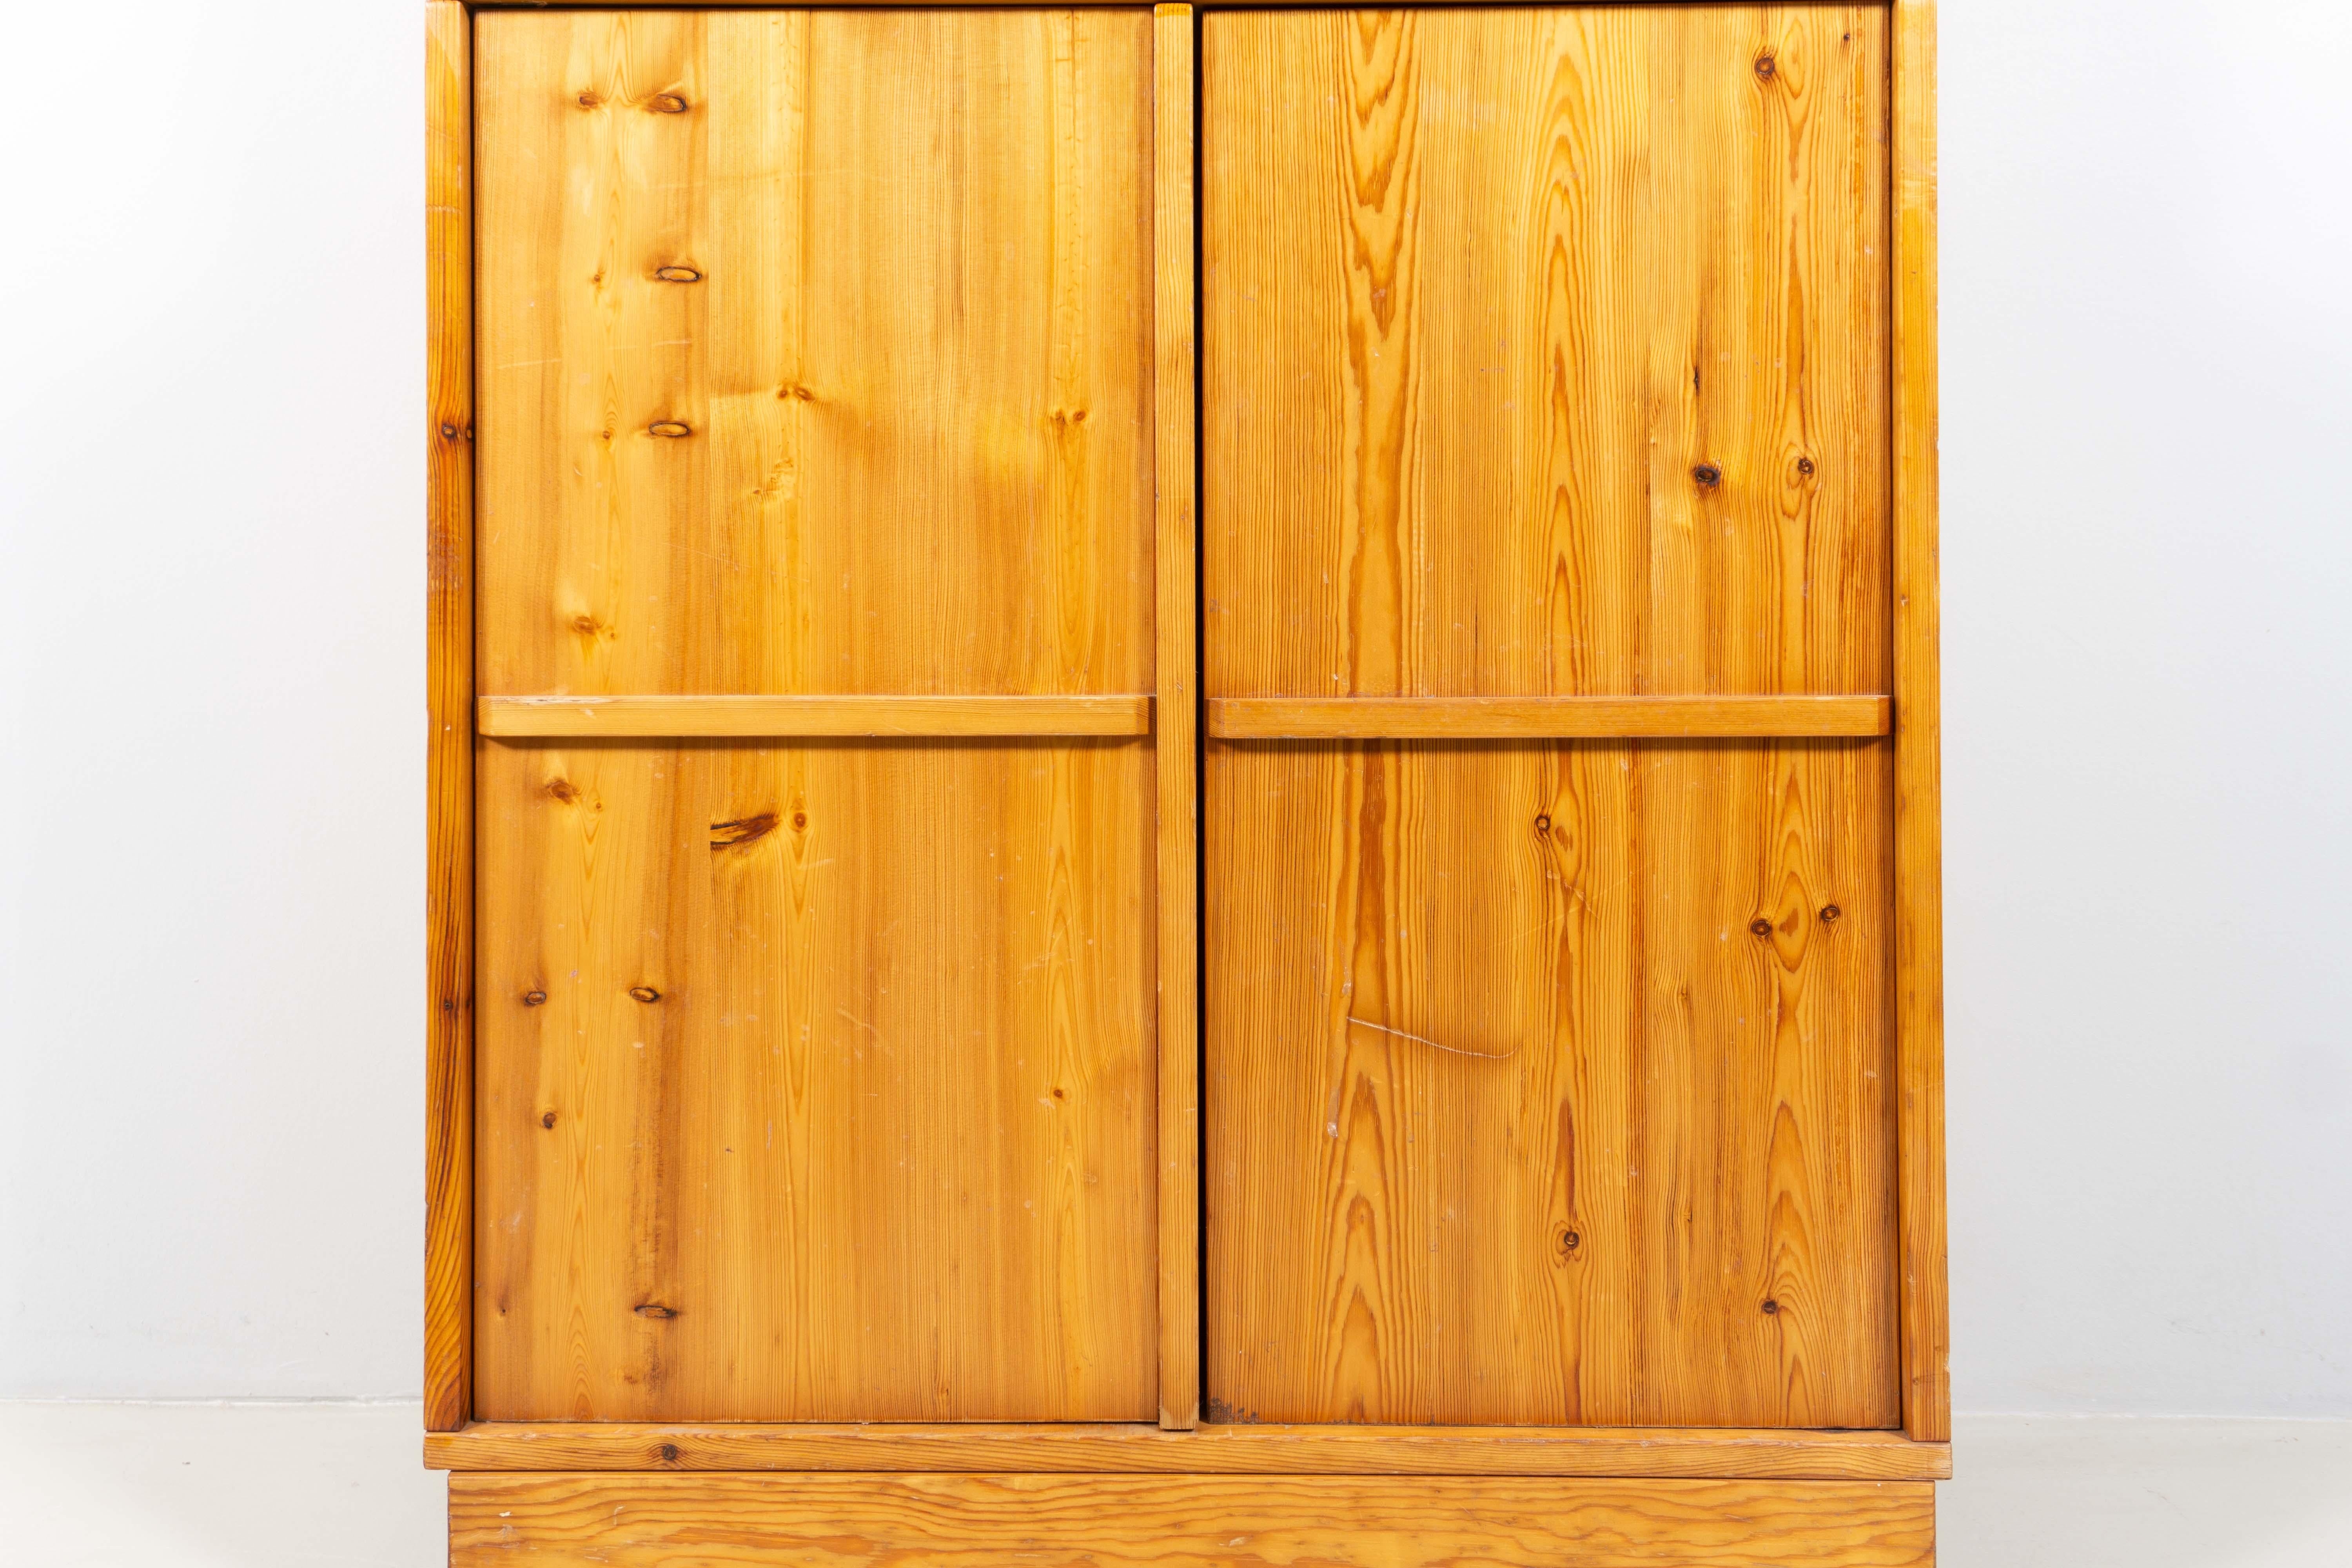 Gianfranco Fini a conçu cette magnifique armoire en 1972. Il convainc par ses belles proportions puristes et se compose de deux pièces. La partie inférieure se distingue de la partie supérieure par sa profondeur et ses deux portes. Derrière la porte